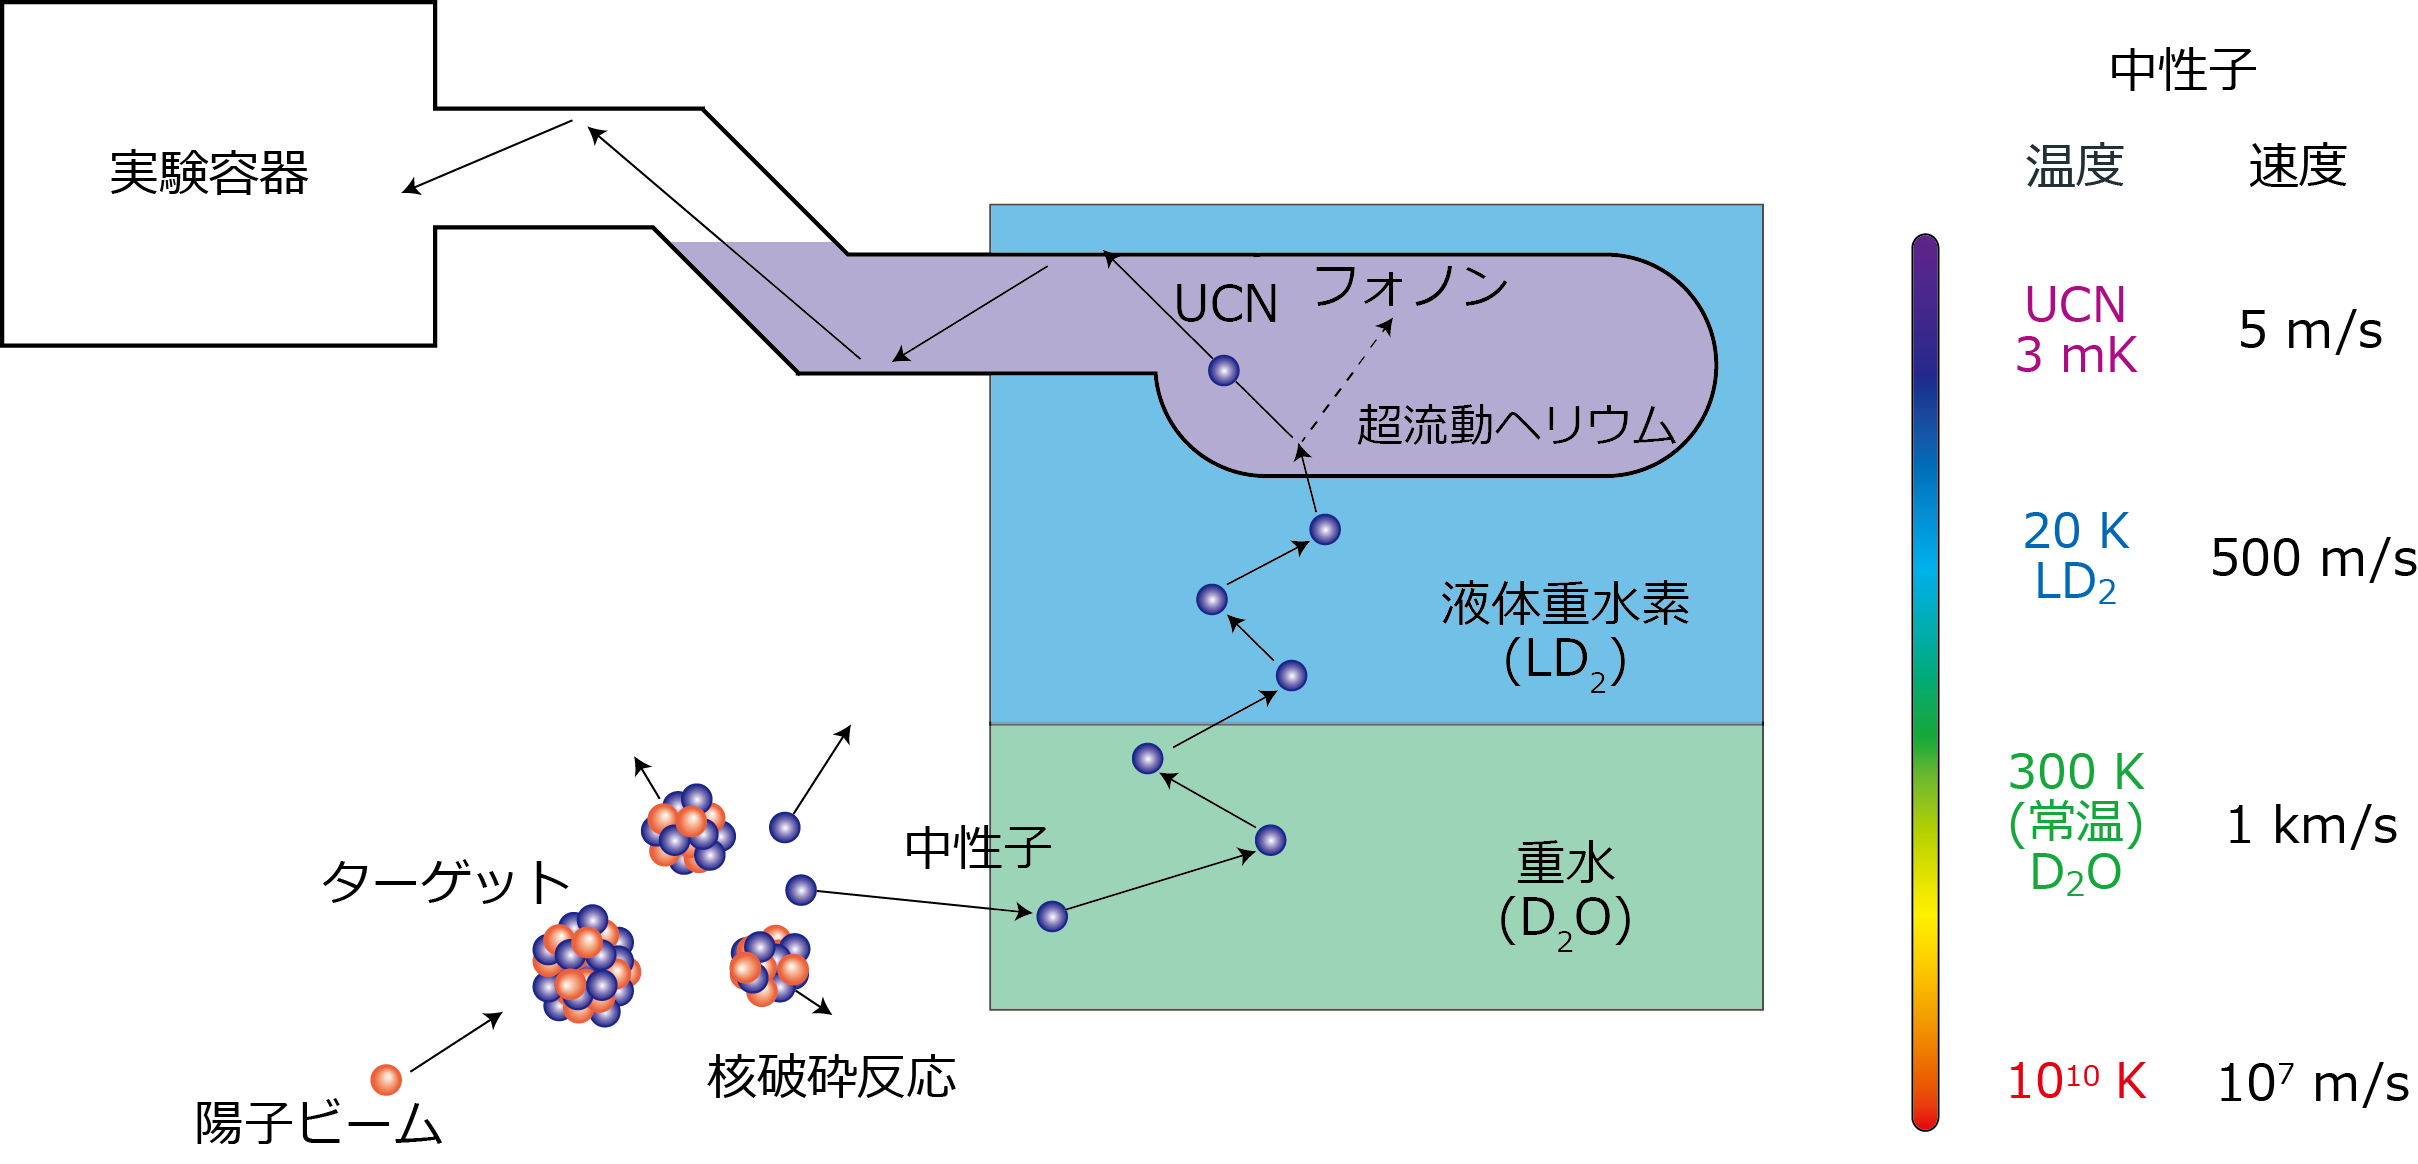 図3. 陽子ビームによる核破砕反応により原子核から飛び出したばかりの中性子は、メガeV級のエネルギーを持つ、つまり非常に高温な状態ですが、図の下から順に段階的に冷却され、最終的に1 Kの液体ヘリウム（紫の部分）を用いて5 m/sという極低速度で運動する超冷中性子（UCN）となります。こうして得られたUCNの運動エネルギーは非常に小さいため、実験容器内に閉じ込めることができます。UCNグループが開発したヘリウム冷凍機は、この内紫の部分にある液体ヘリウムを1 Kに冷却し続けるためのものです。